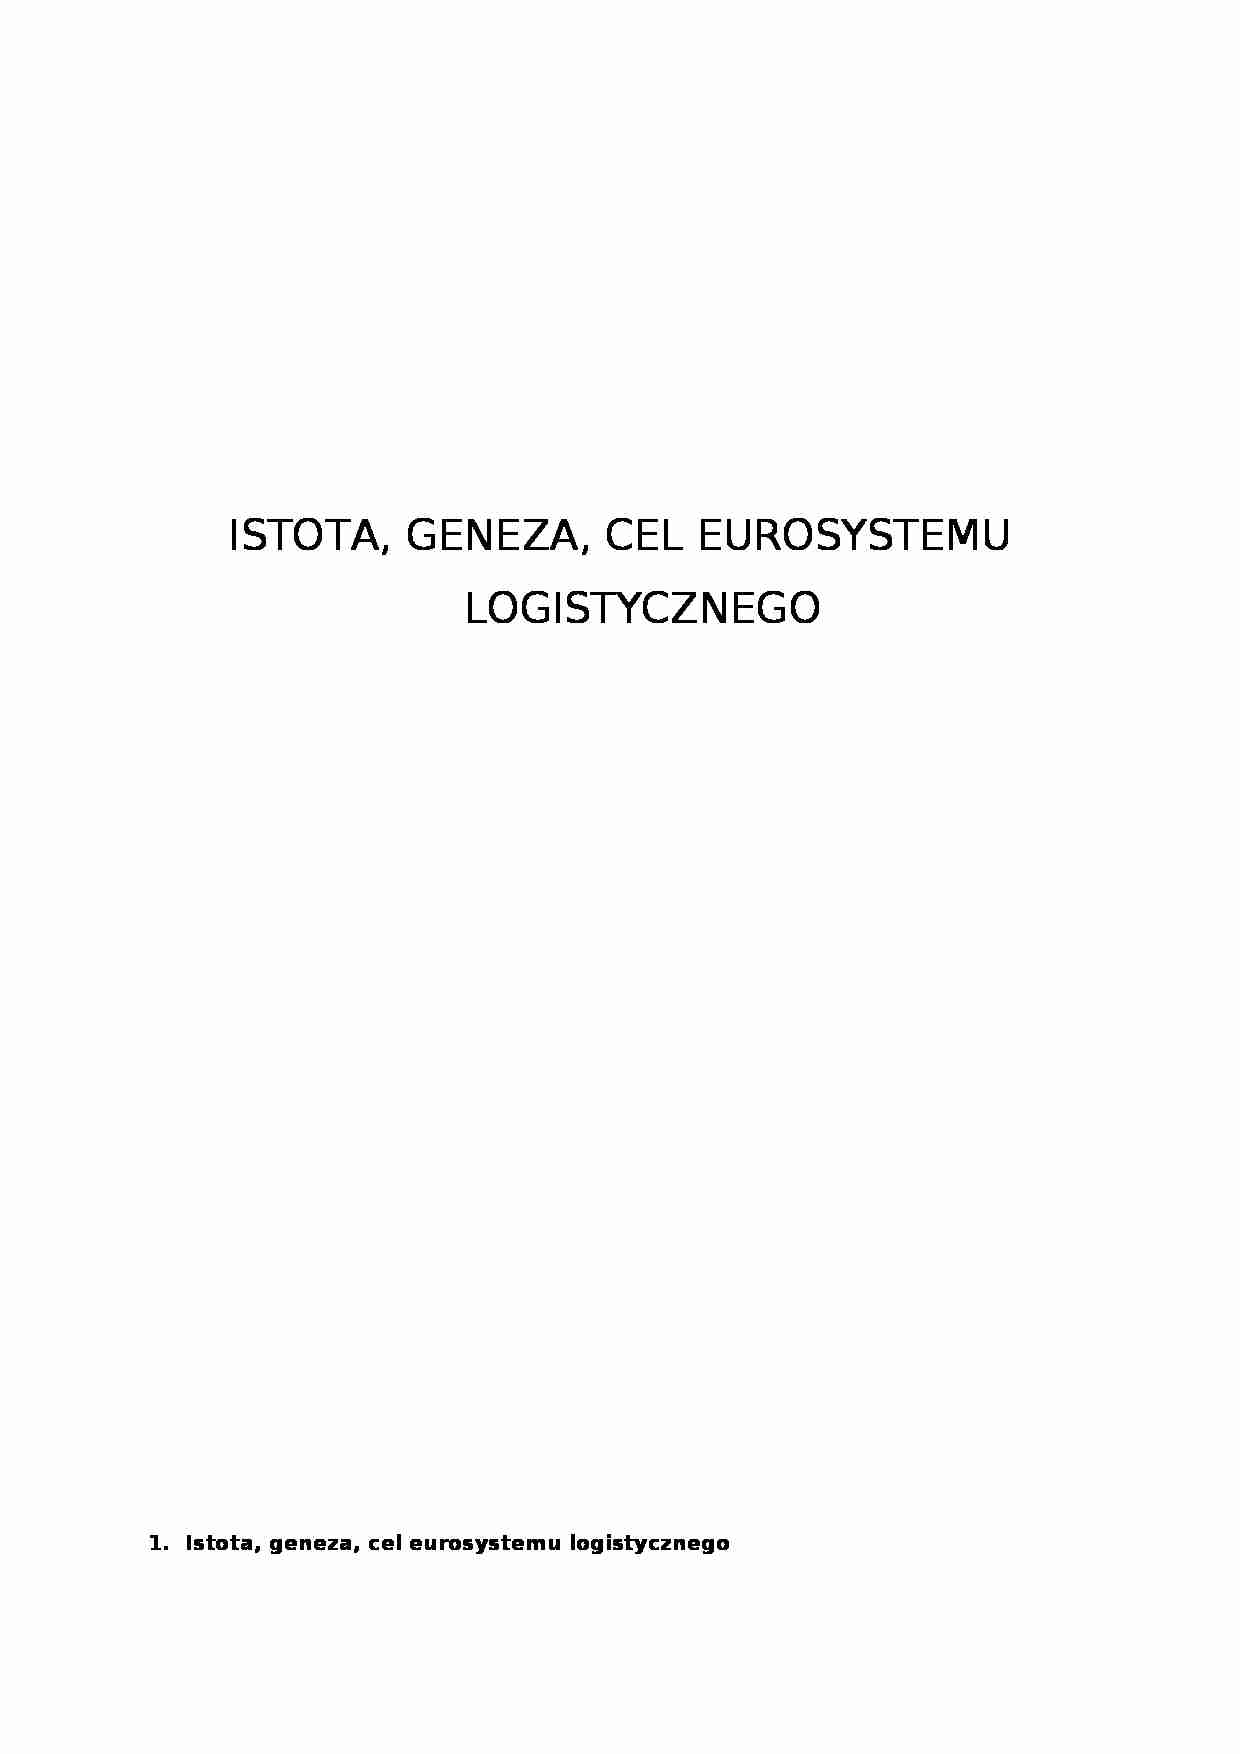 Eurosystem logistyczny - Istota, geneza, cel eurosystemu logistycznego - strona 1